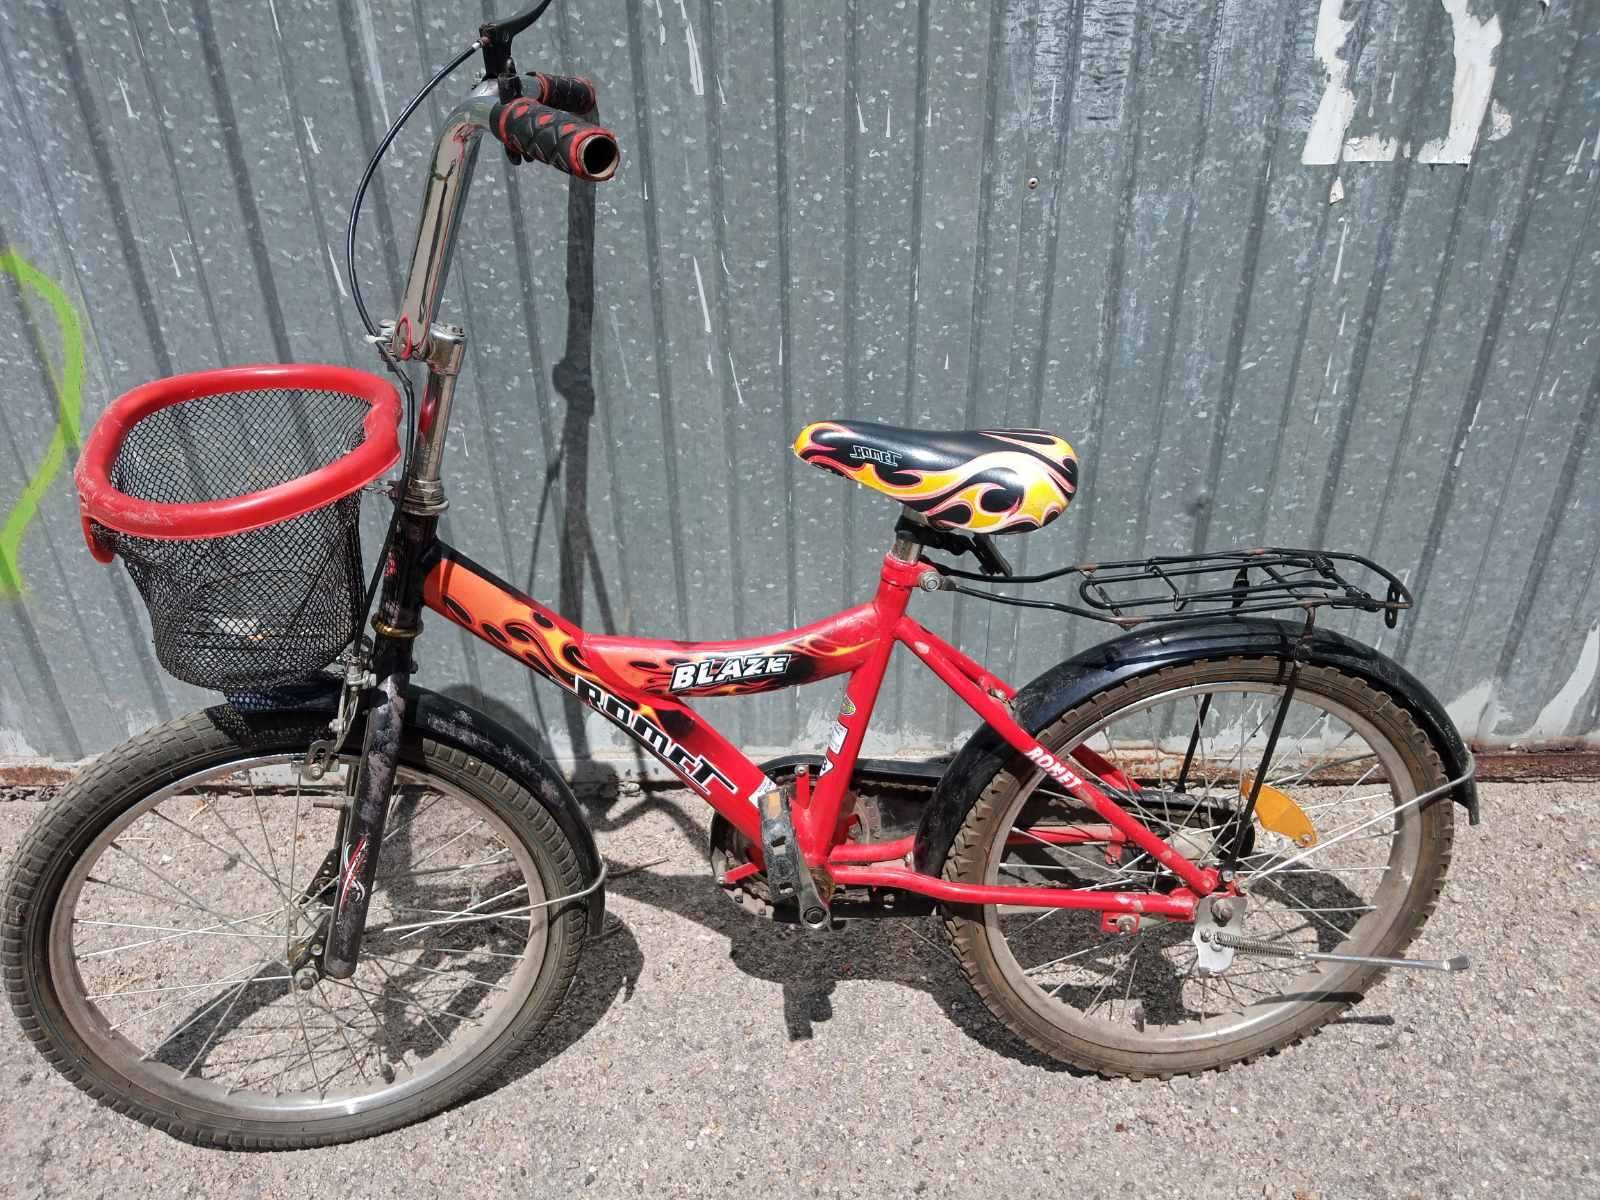 Велосипед с корзиной